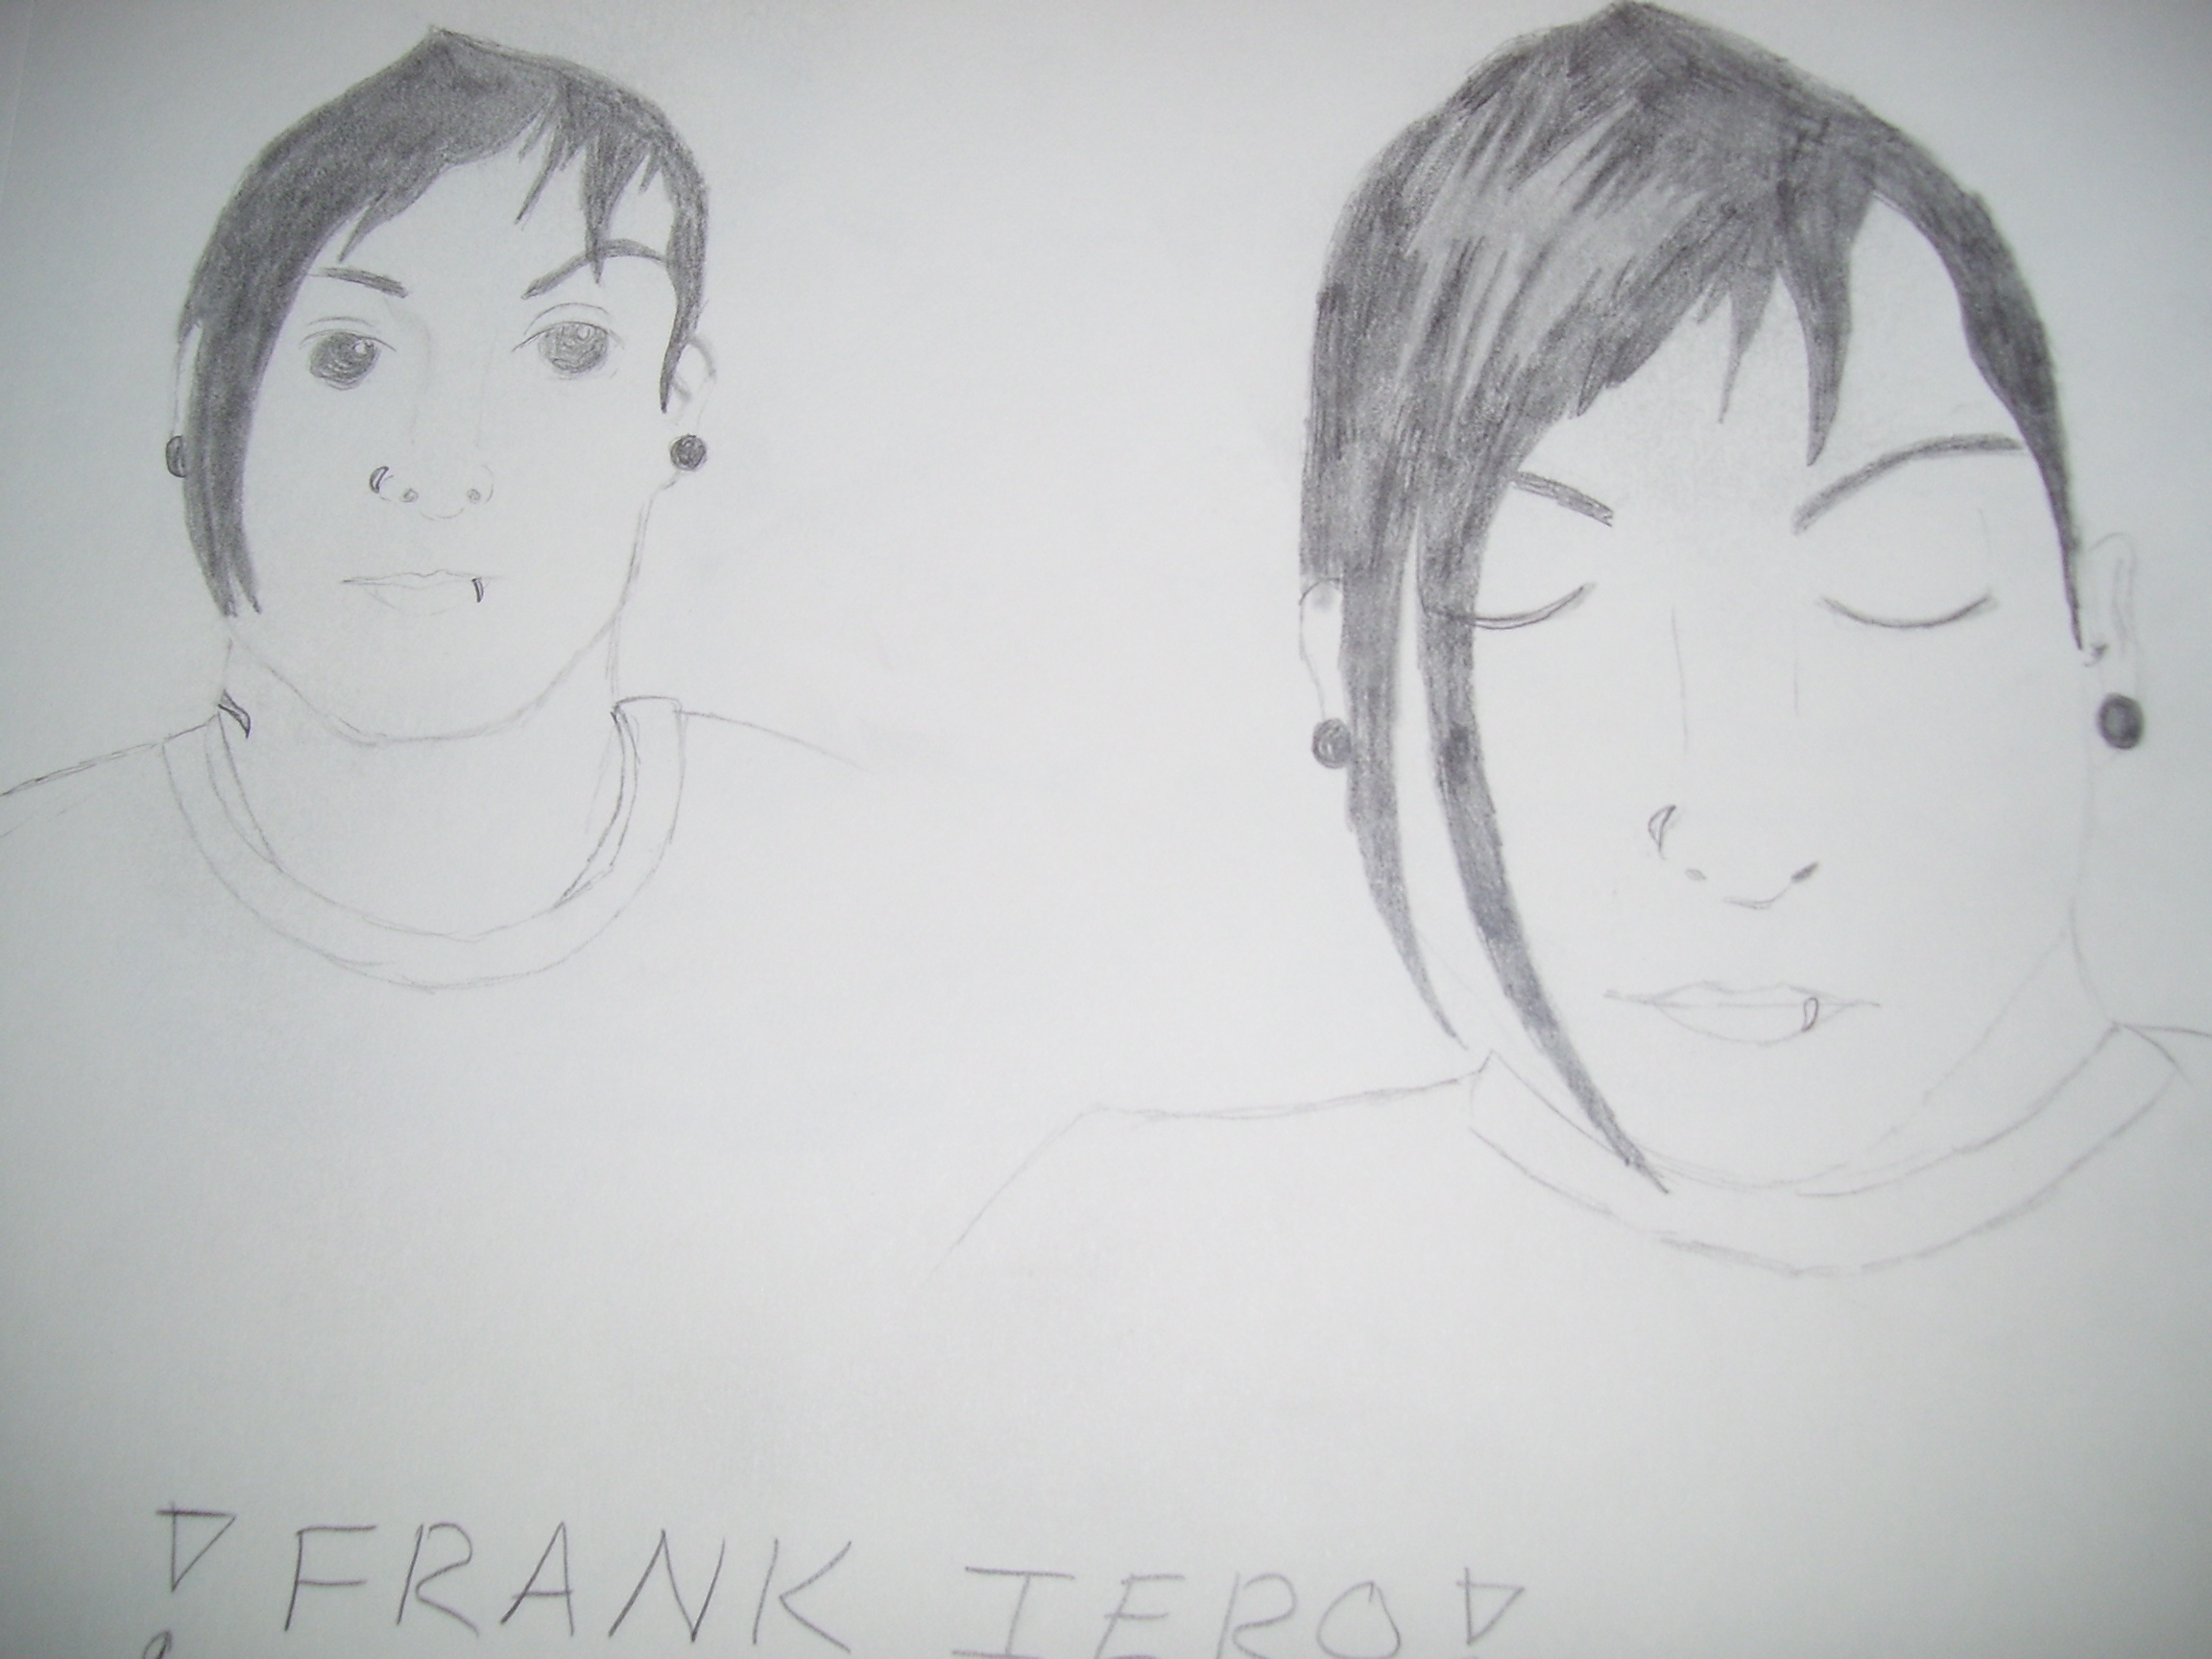 Frank Iero x2 by XxMonikaBluexX